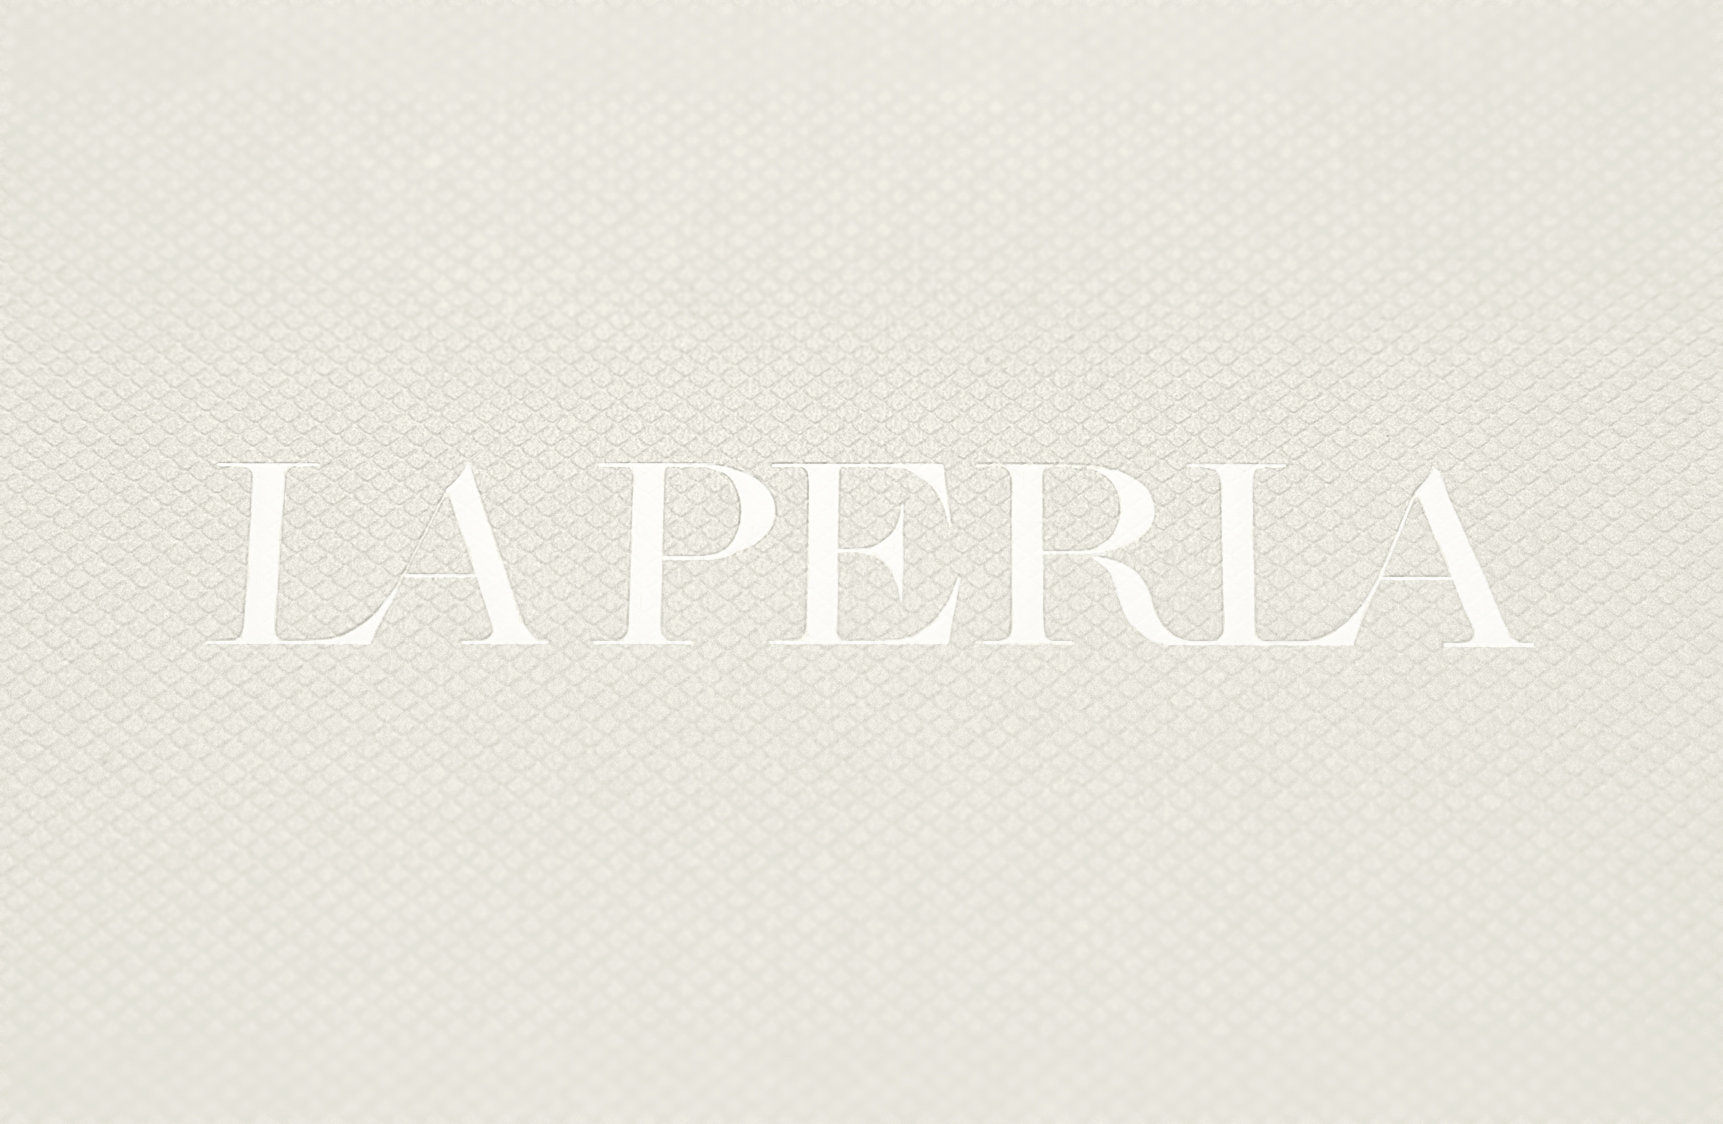 Обзор комплекта нижнего белья Graphique Couture от La Perla